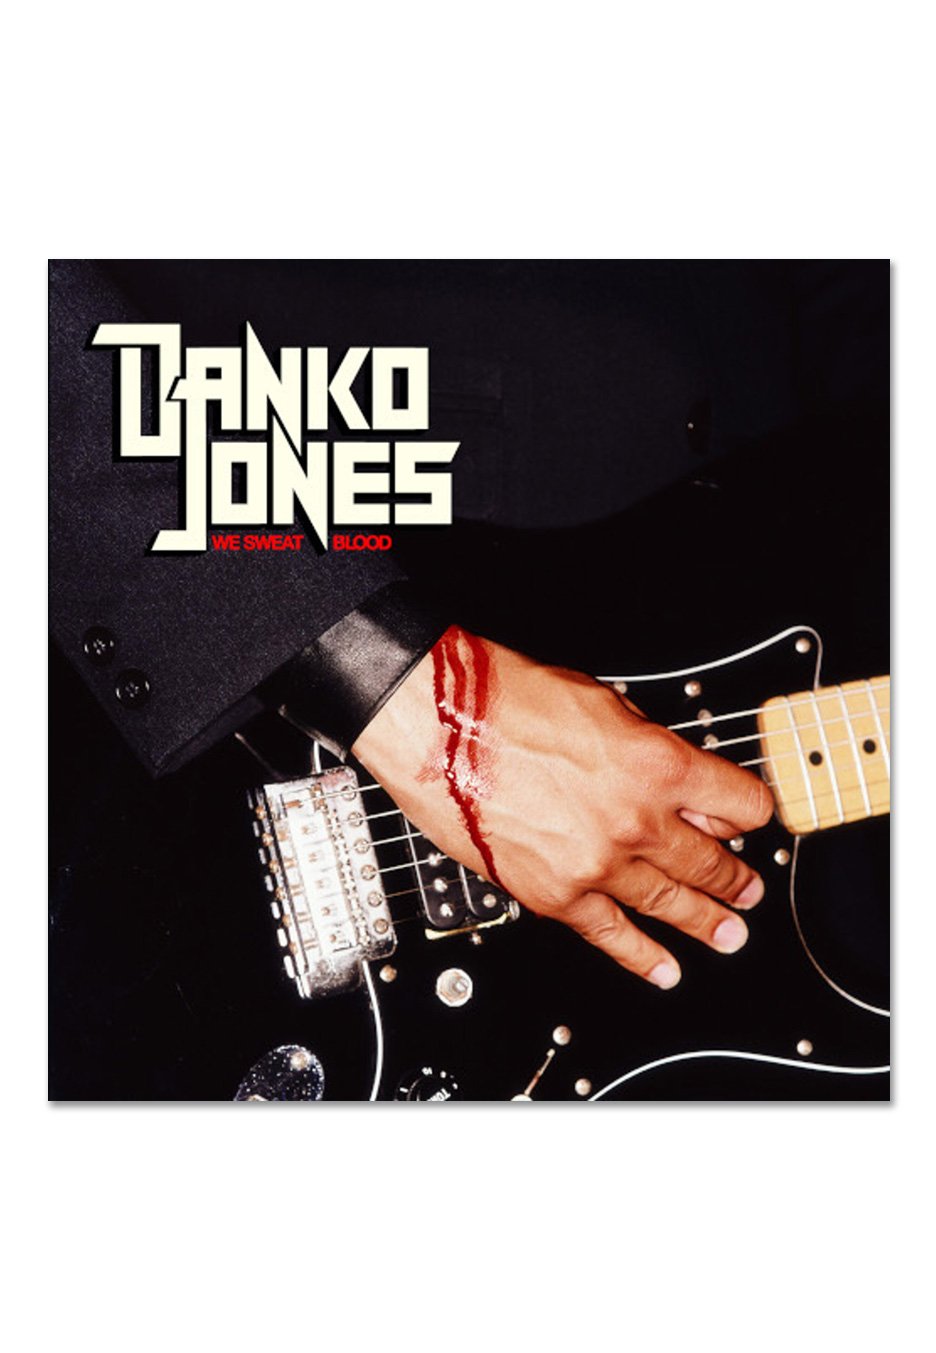 Danko Jones - We Sweat Blood - Vinyl